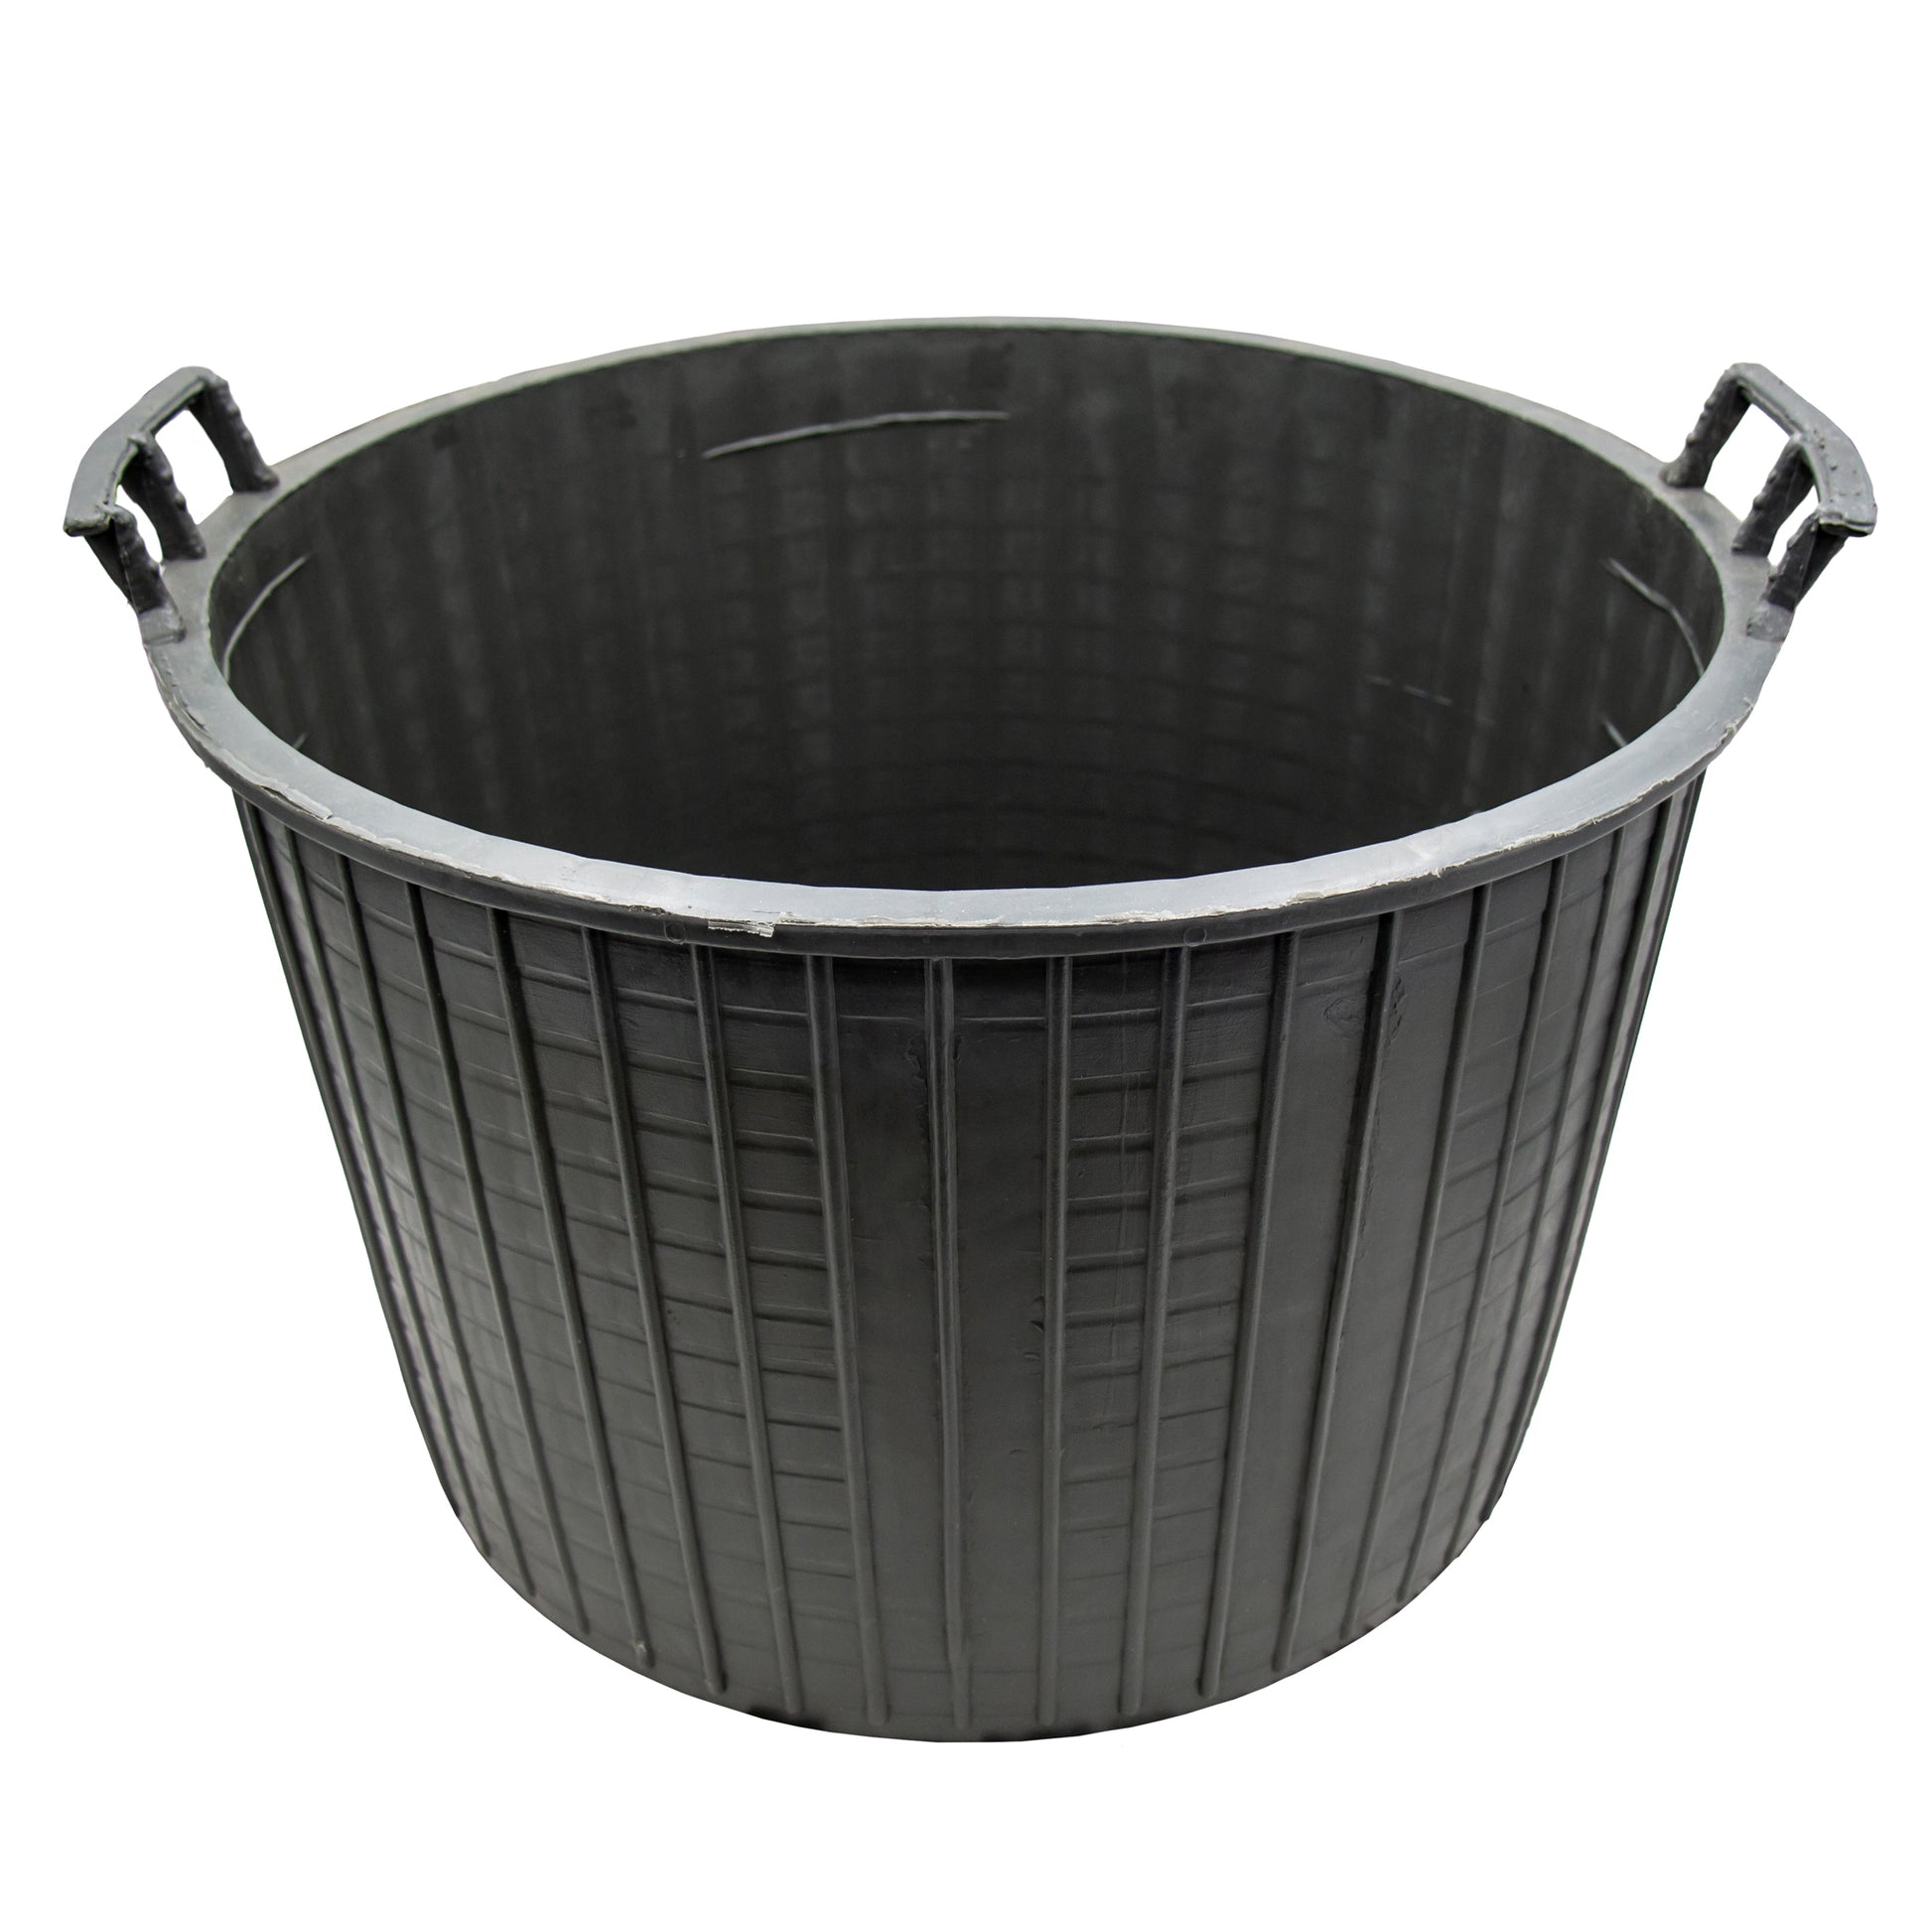 PVC basket for 54 litre narrow neck demijohns, bottom only